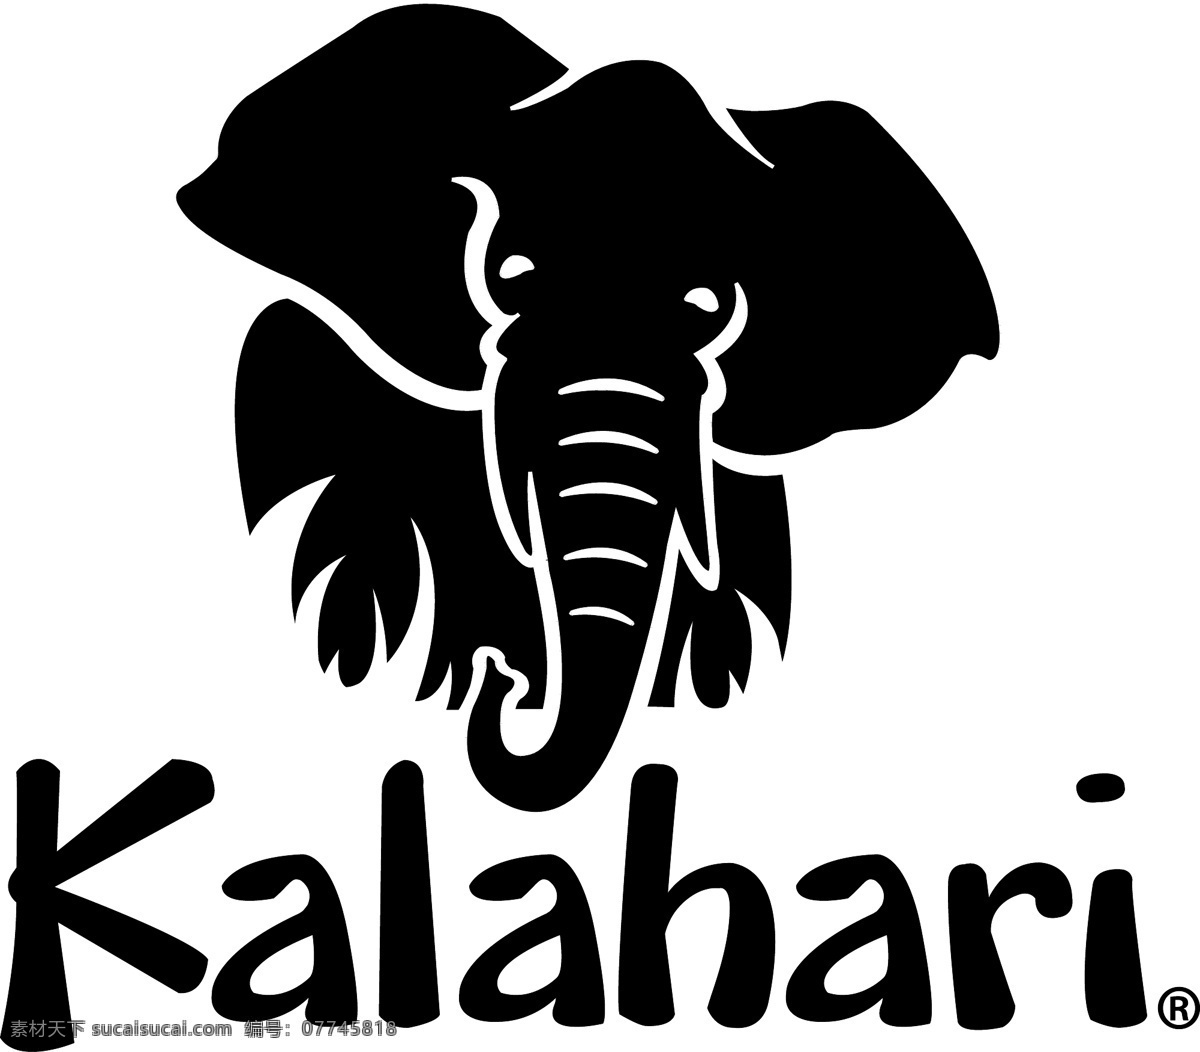 喀拉 哈里 沙漠 标识 公司 免费 品牌 品牌标识 商标 矢量标志下载 免费矢量标识 矢量 psd源文件 logo设计